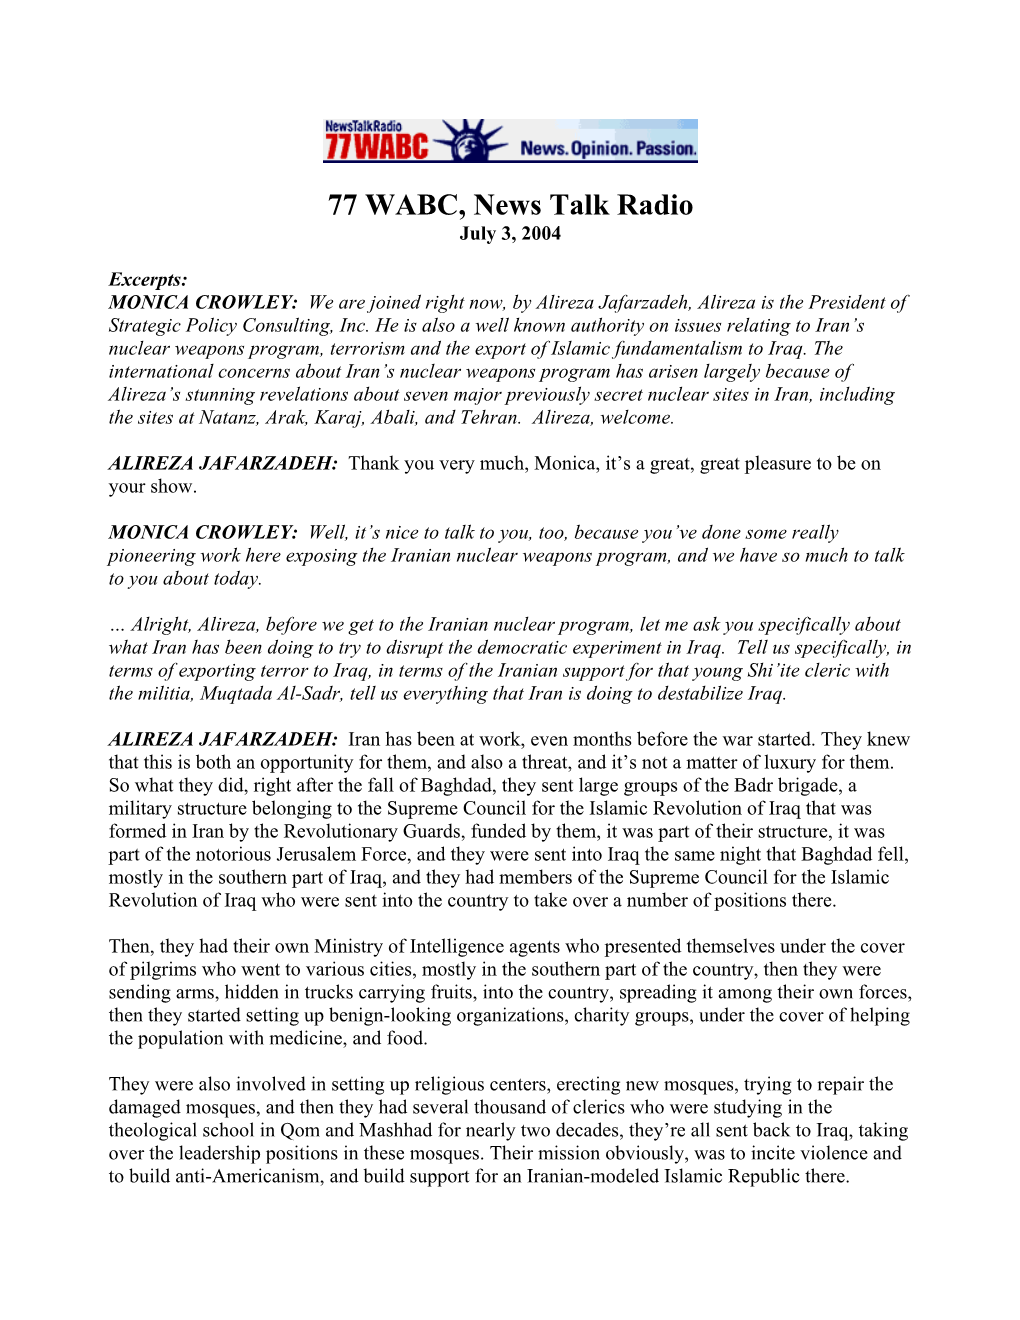 77 WABC, News Talk Radio July 3, 2004